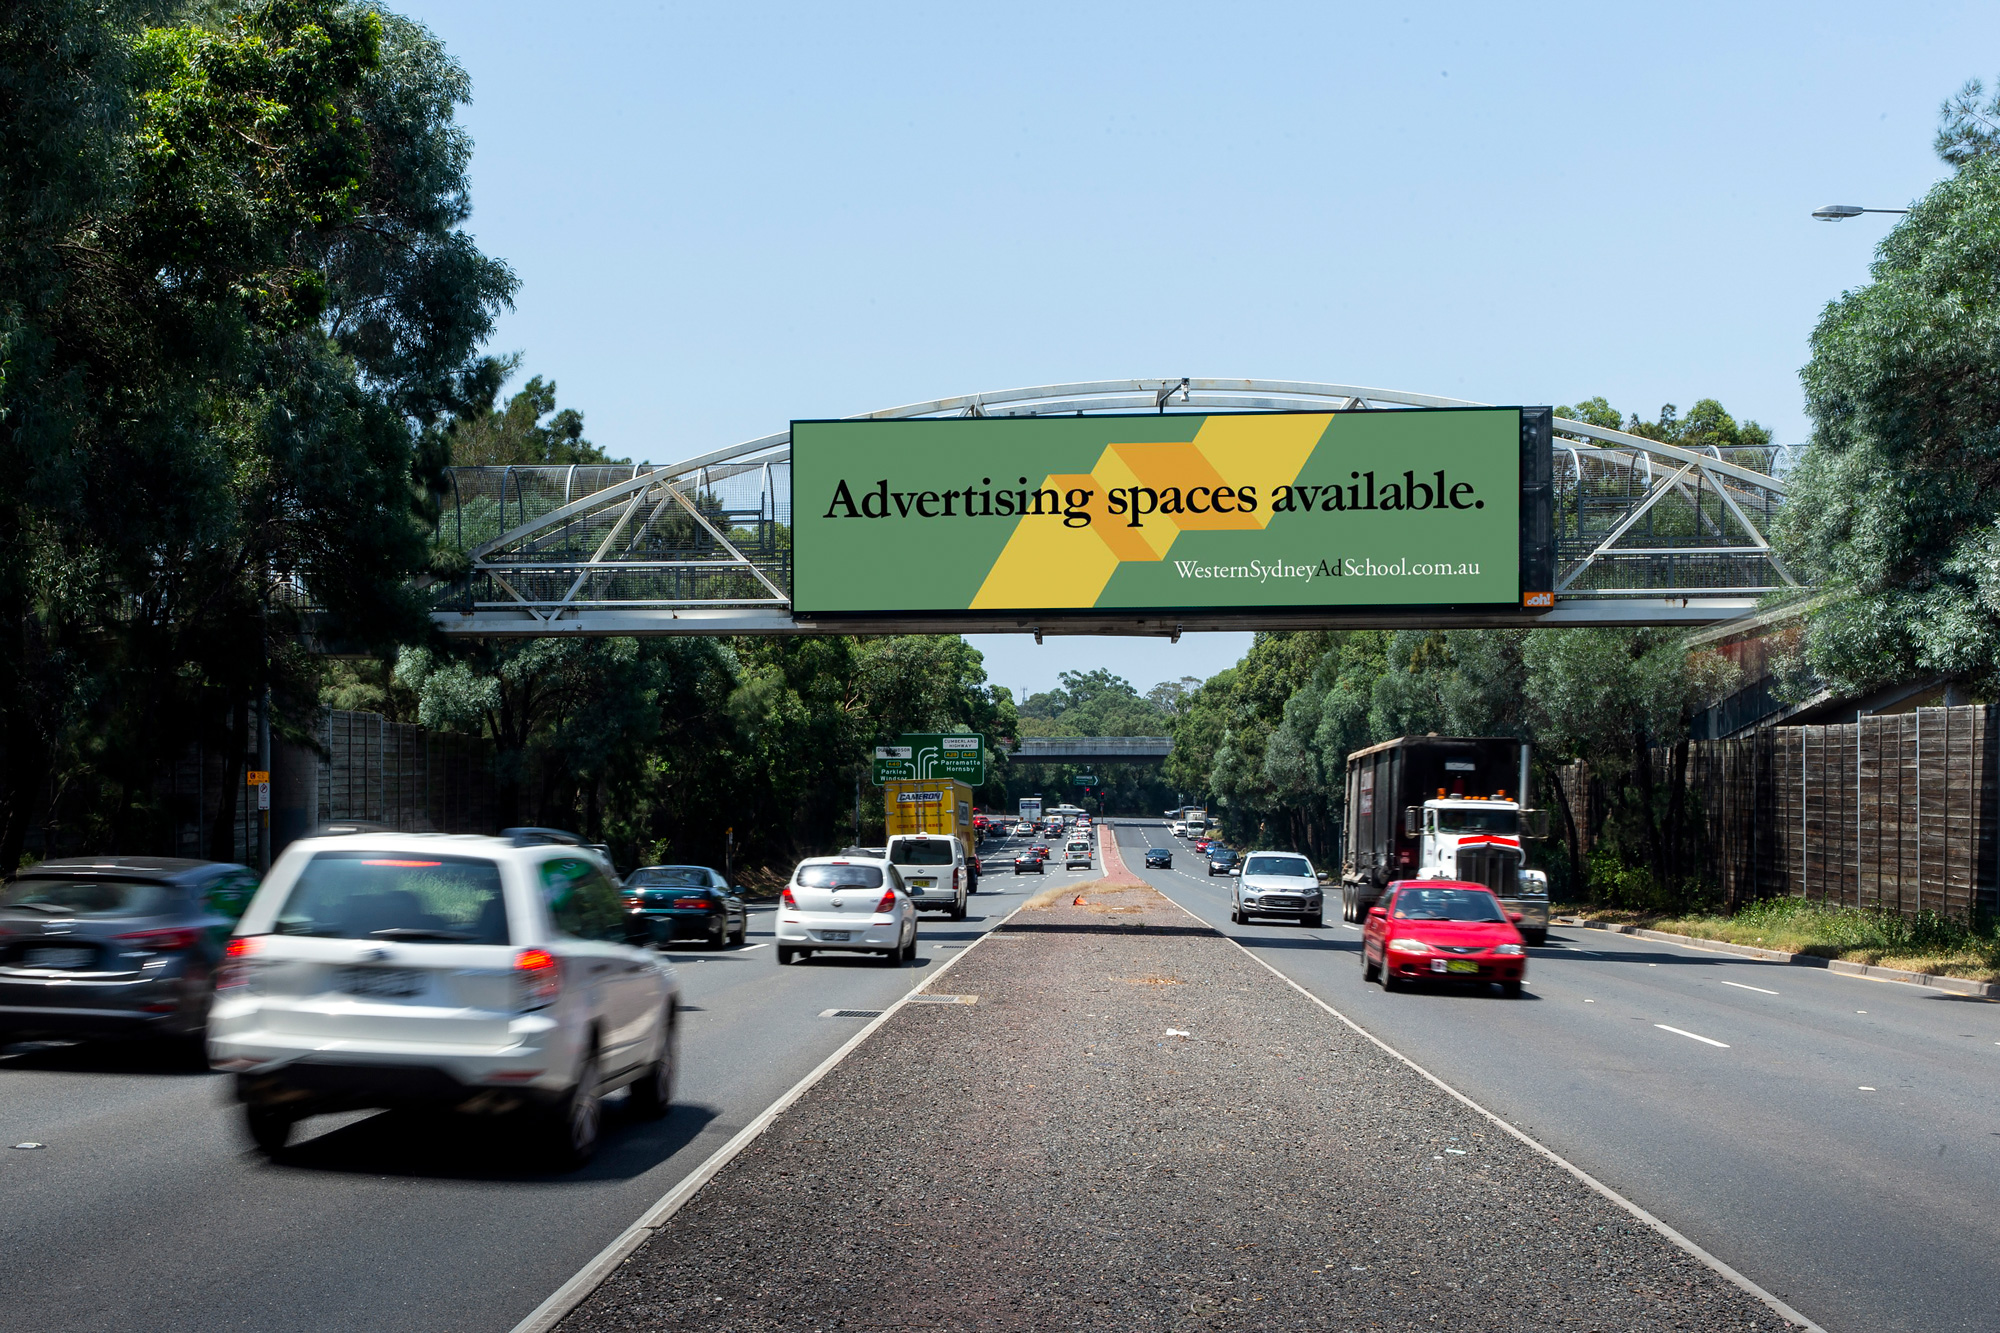 Western Sydney Ad School billboard advertising on road in Sydney